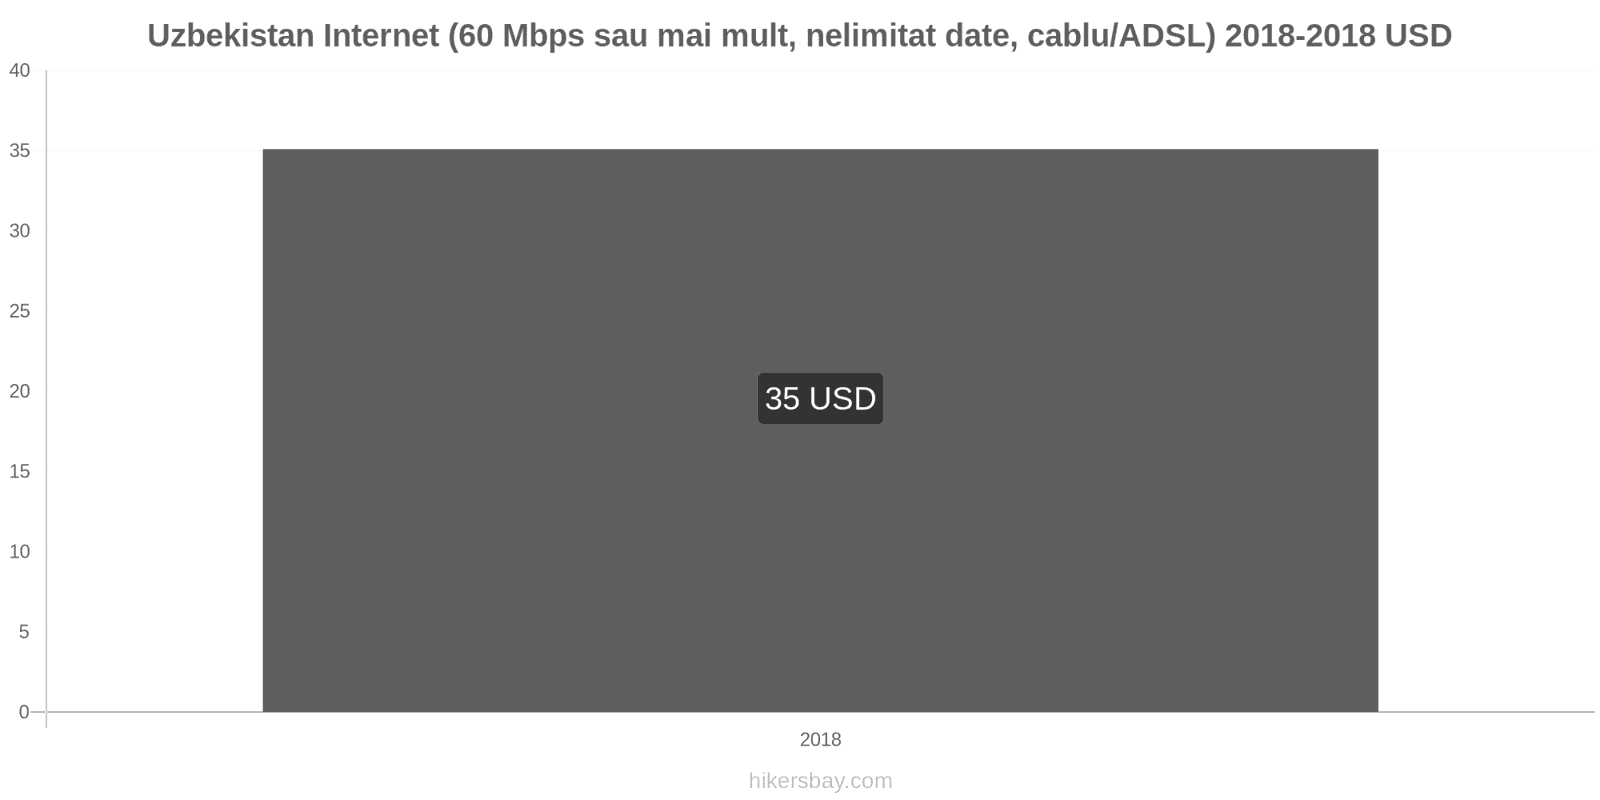 Uzbekistan schimbări de prețuri Internet (60 Mbps sau mai mult, date nelimitate, cablu/ADSL) hikersbay.com